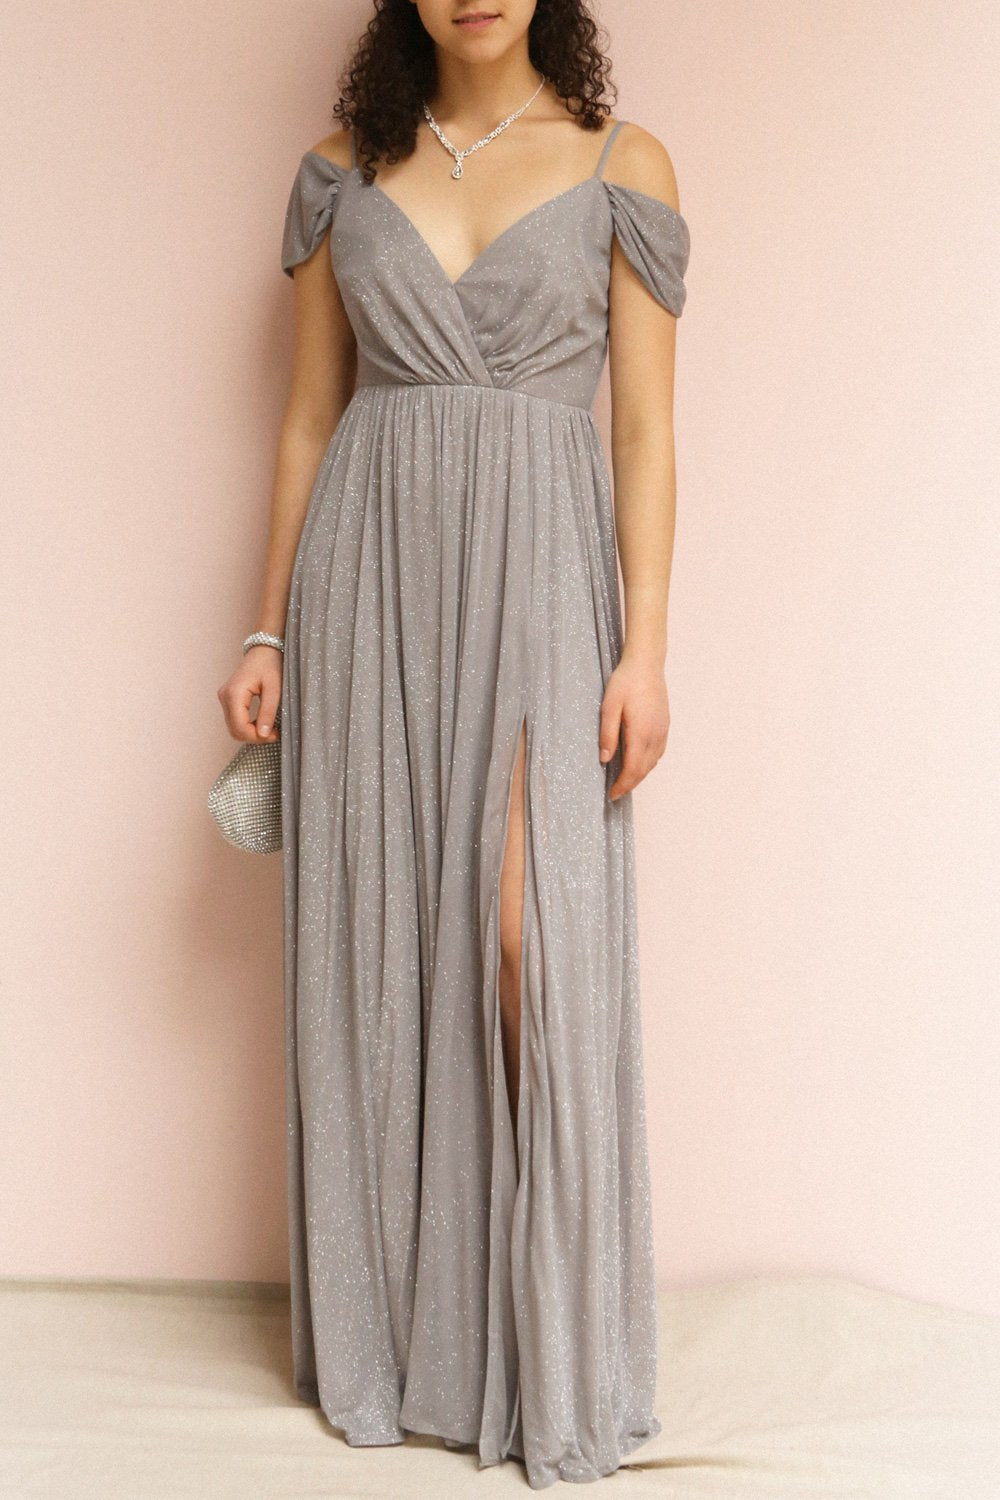 Cephee Grey Maxi Glitter Dress | Boutique 1861 on model